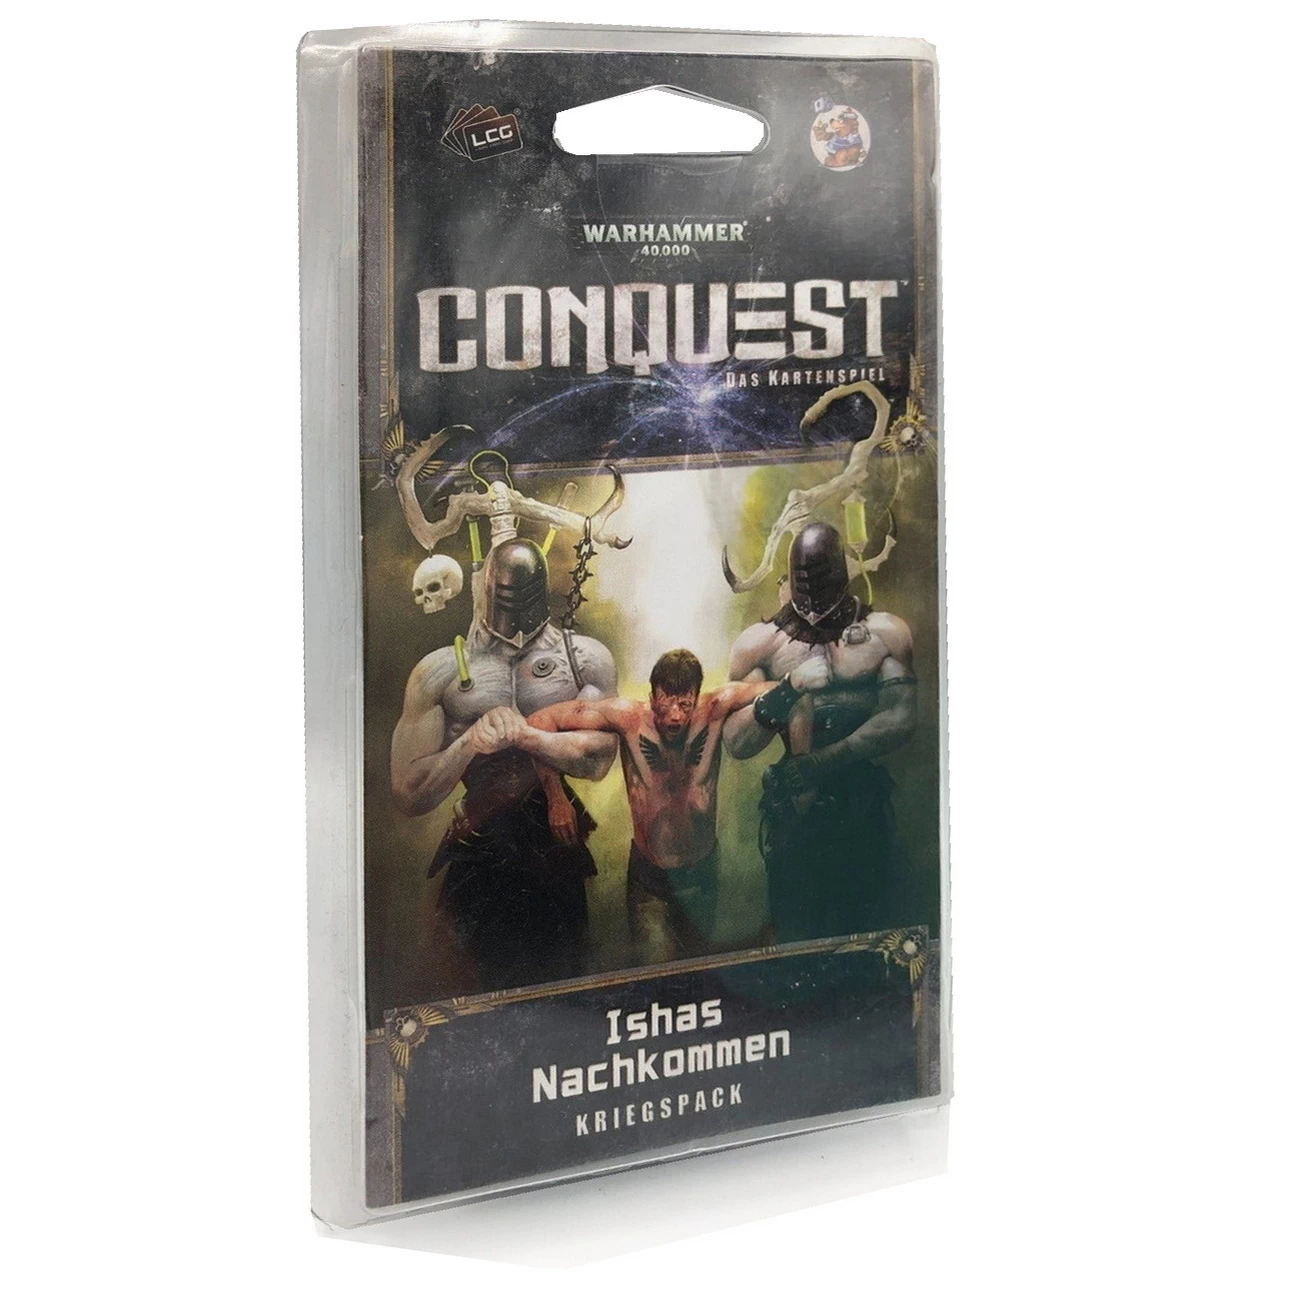 Warhammer 40.000 - Conquest - Ishas Nachkommen - Kriegspack